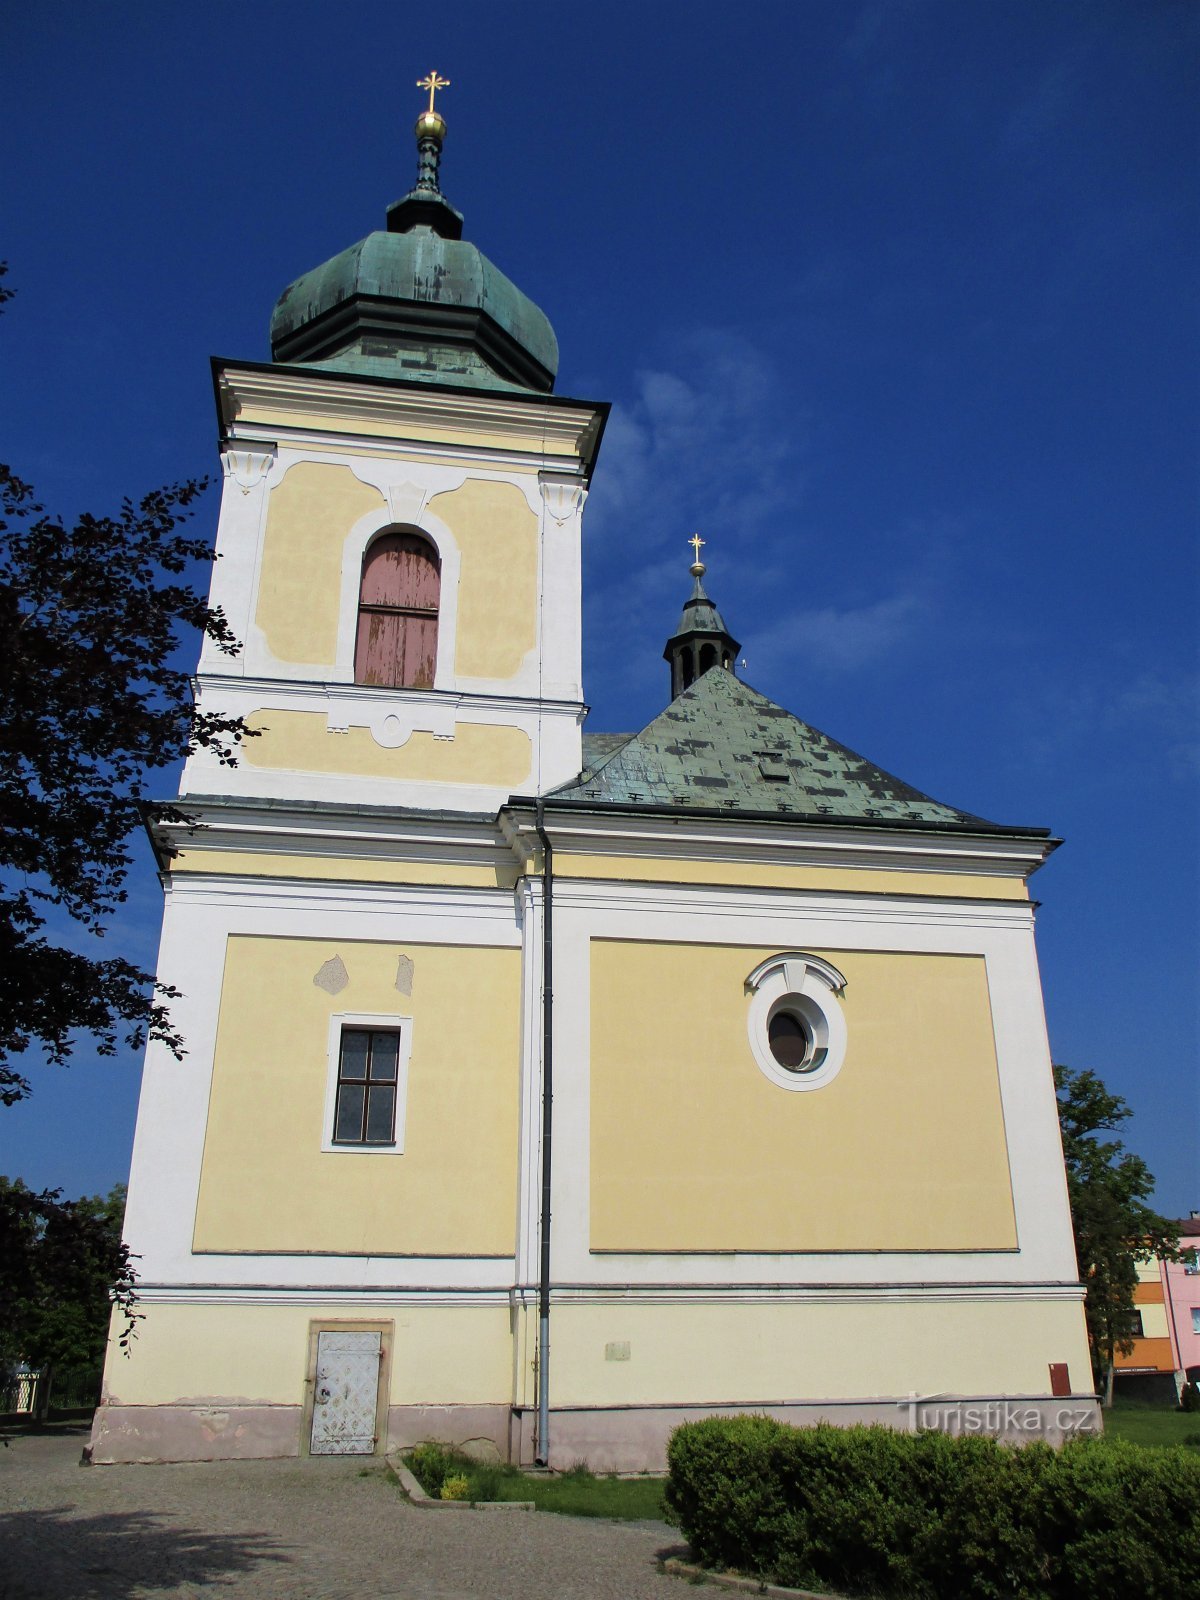 Nhà thờ St. Martina (Holice, 16.5.2020/XNUMX/XNUMX)